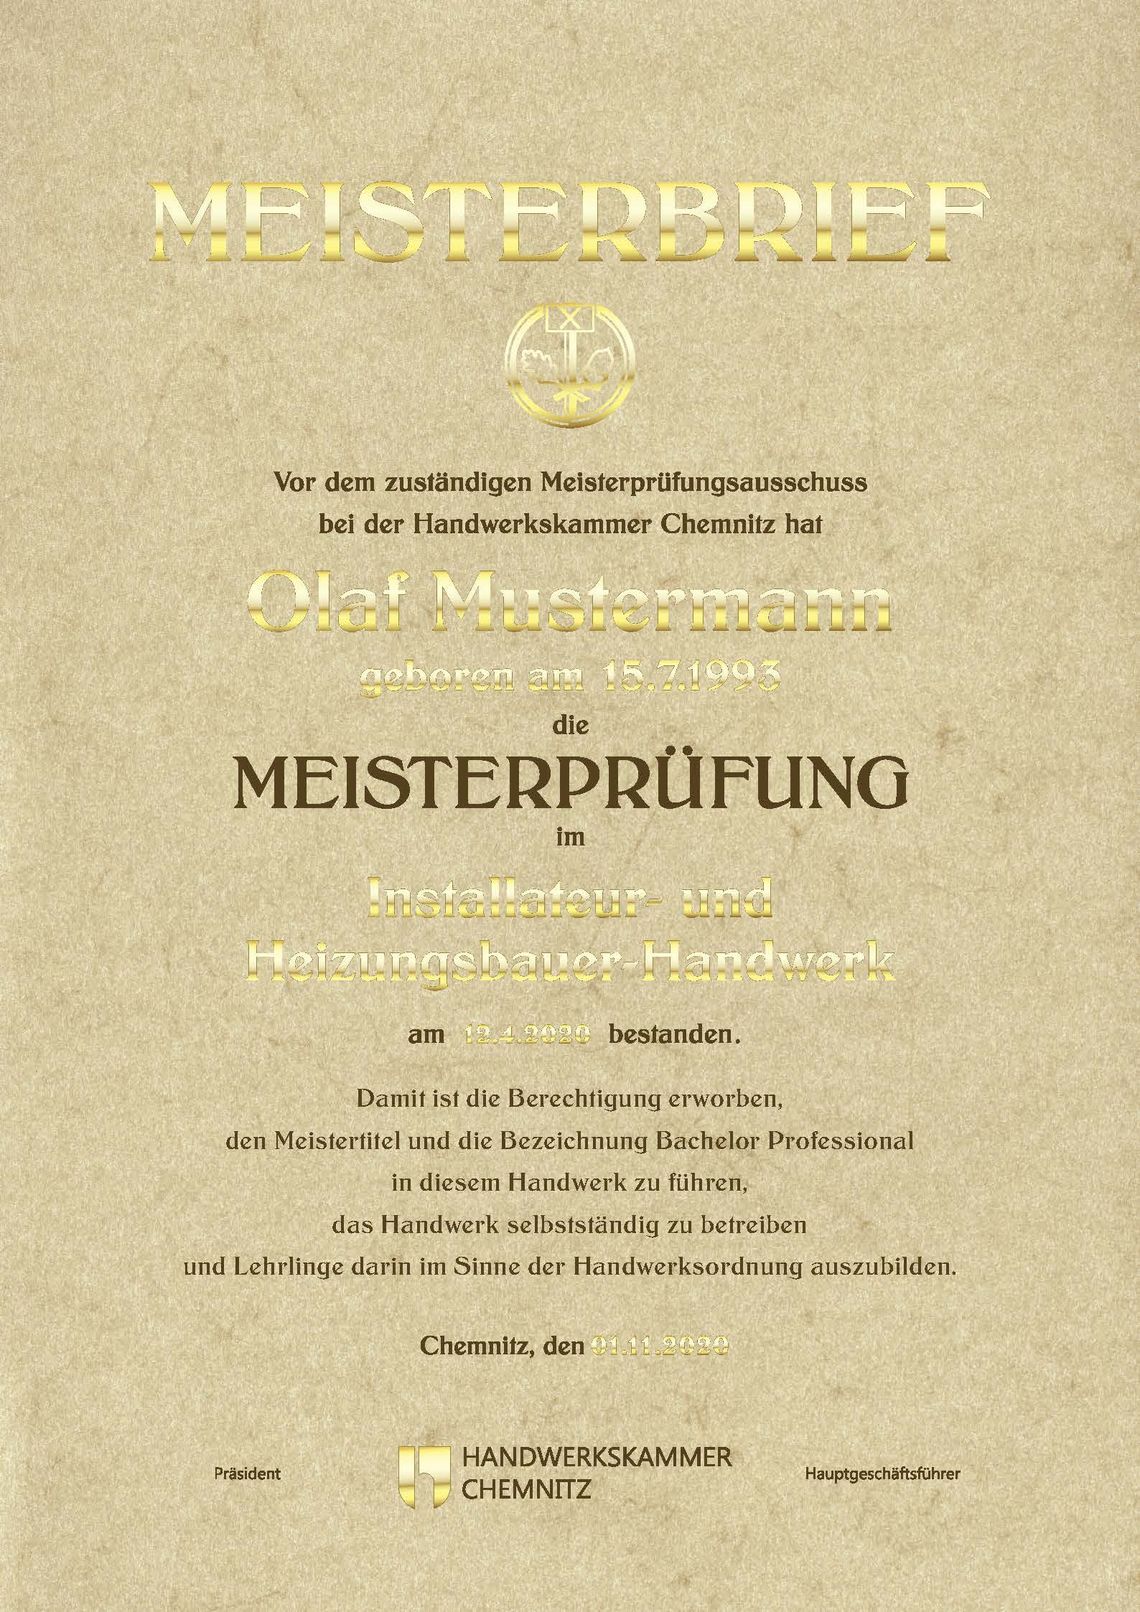 Abbildung eines klassischen Schmuckmeisterbriefes der Handwerkskammer Chemnitz